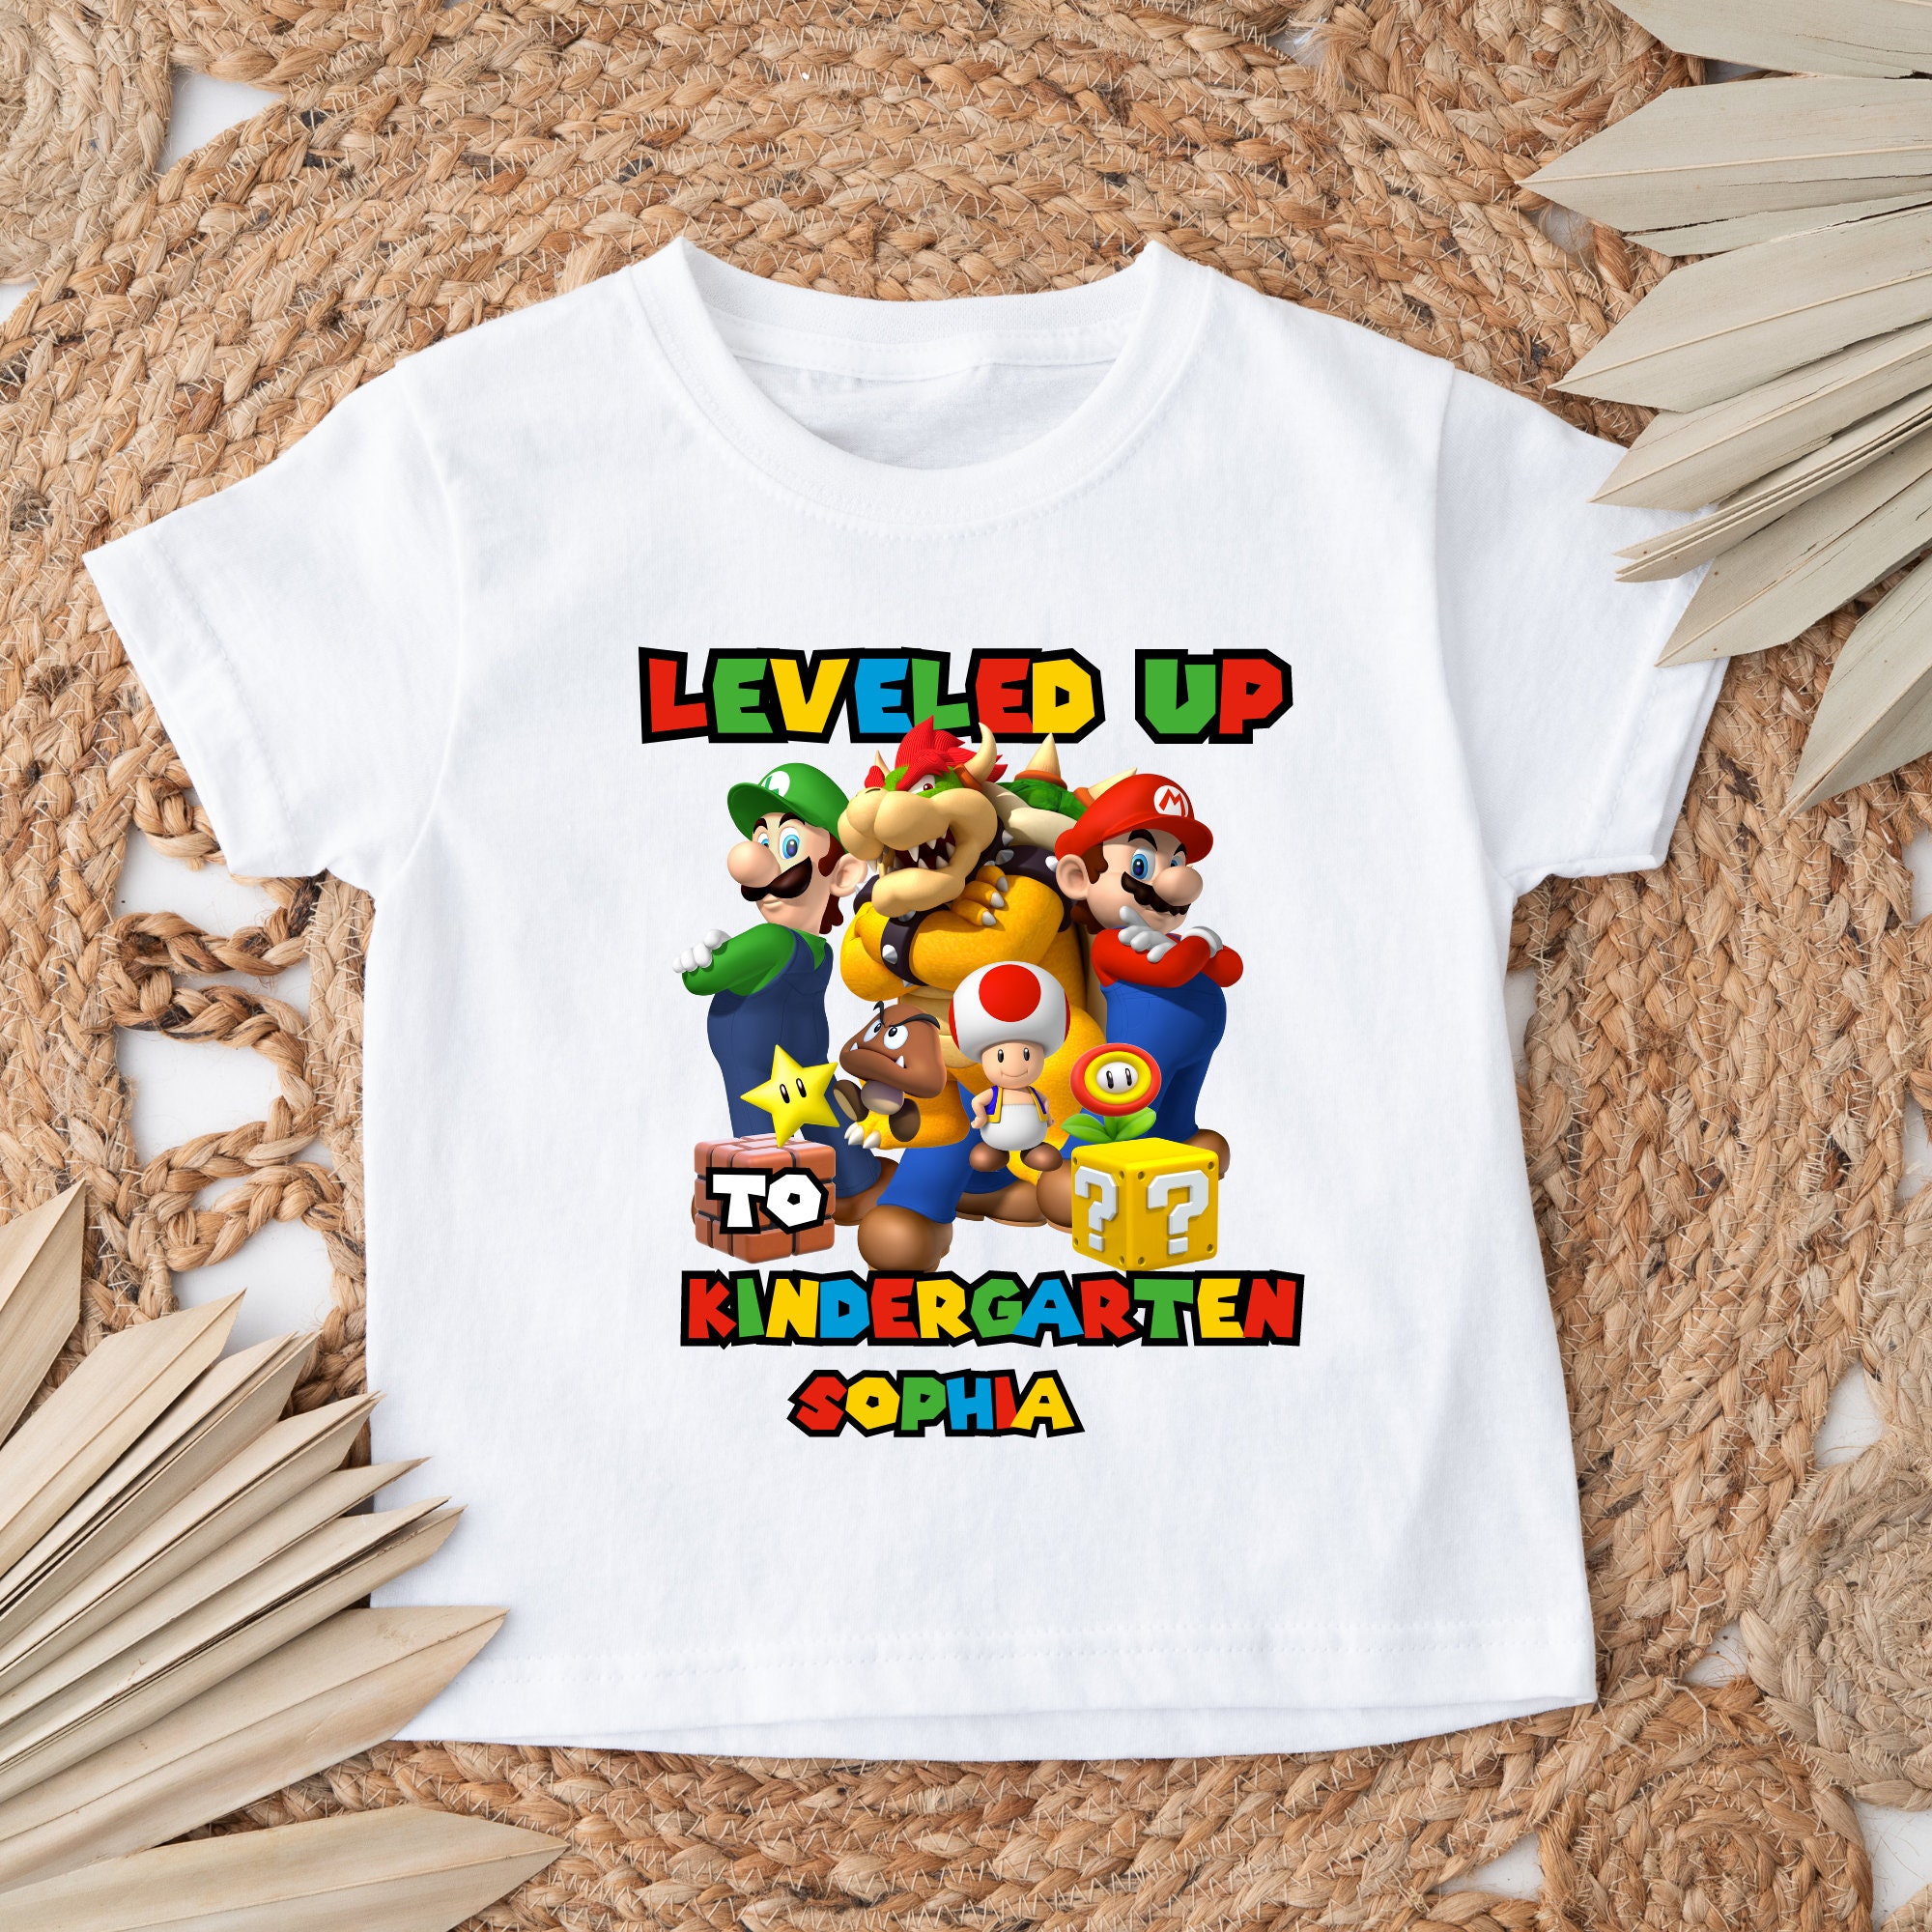 Super Mario Level Up! társasjáték